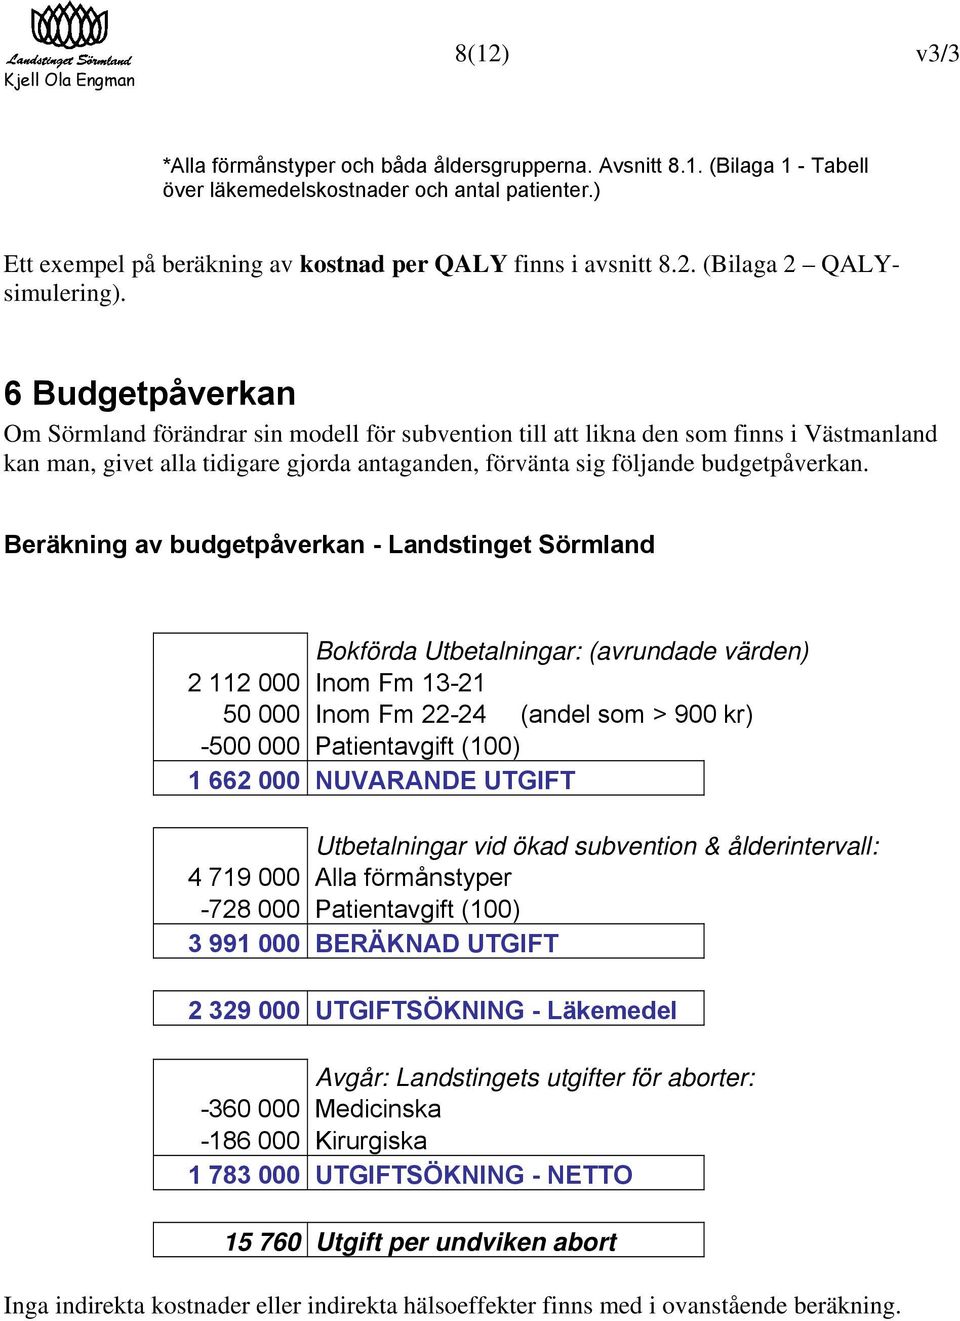 Beräkning av budgetpåverkan - Landstinget Sörmland Bokförda Utbetalningar: (avrundade värden) 2 112 000 Inom Fm 13-21 50 000 Inom Fm 22-24 (andel som > 900 kr) -500 000 Patientavgift (100) 1 662 000